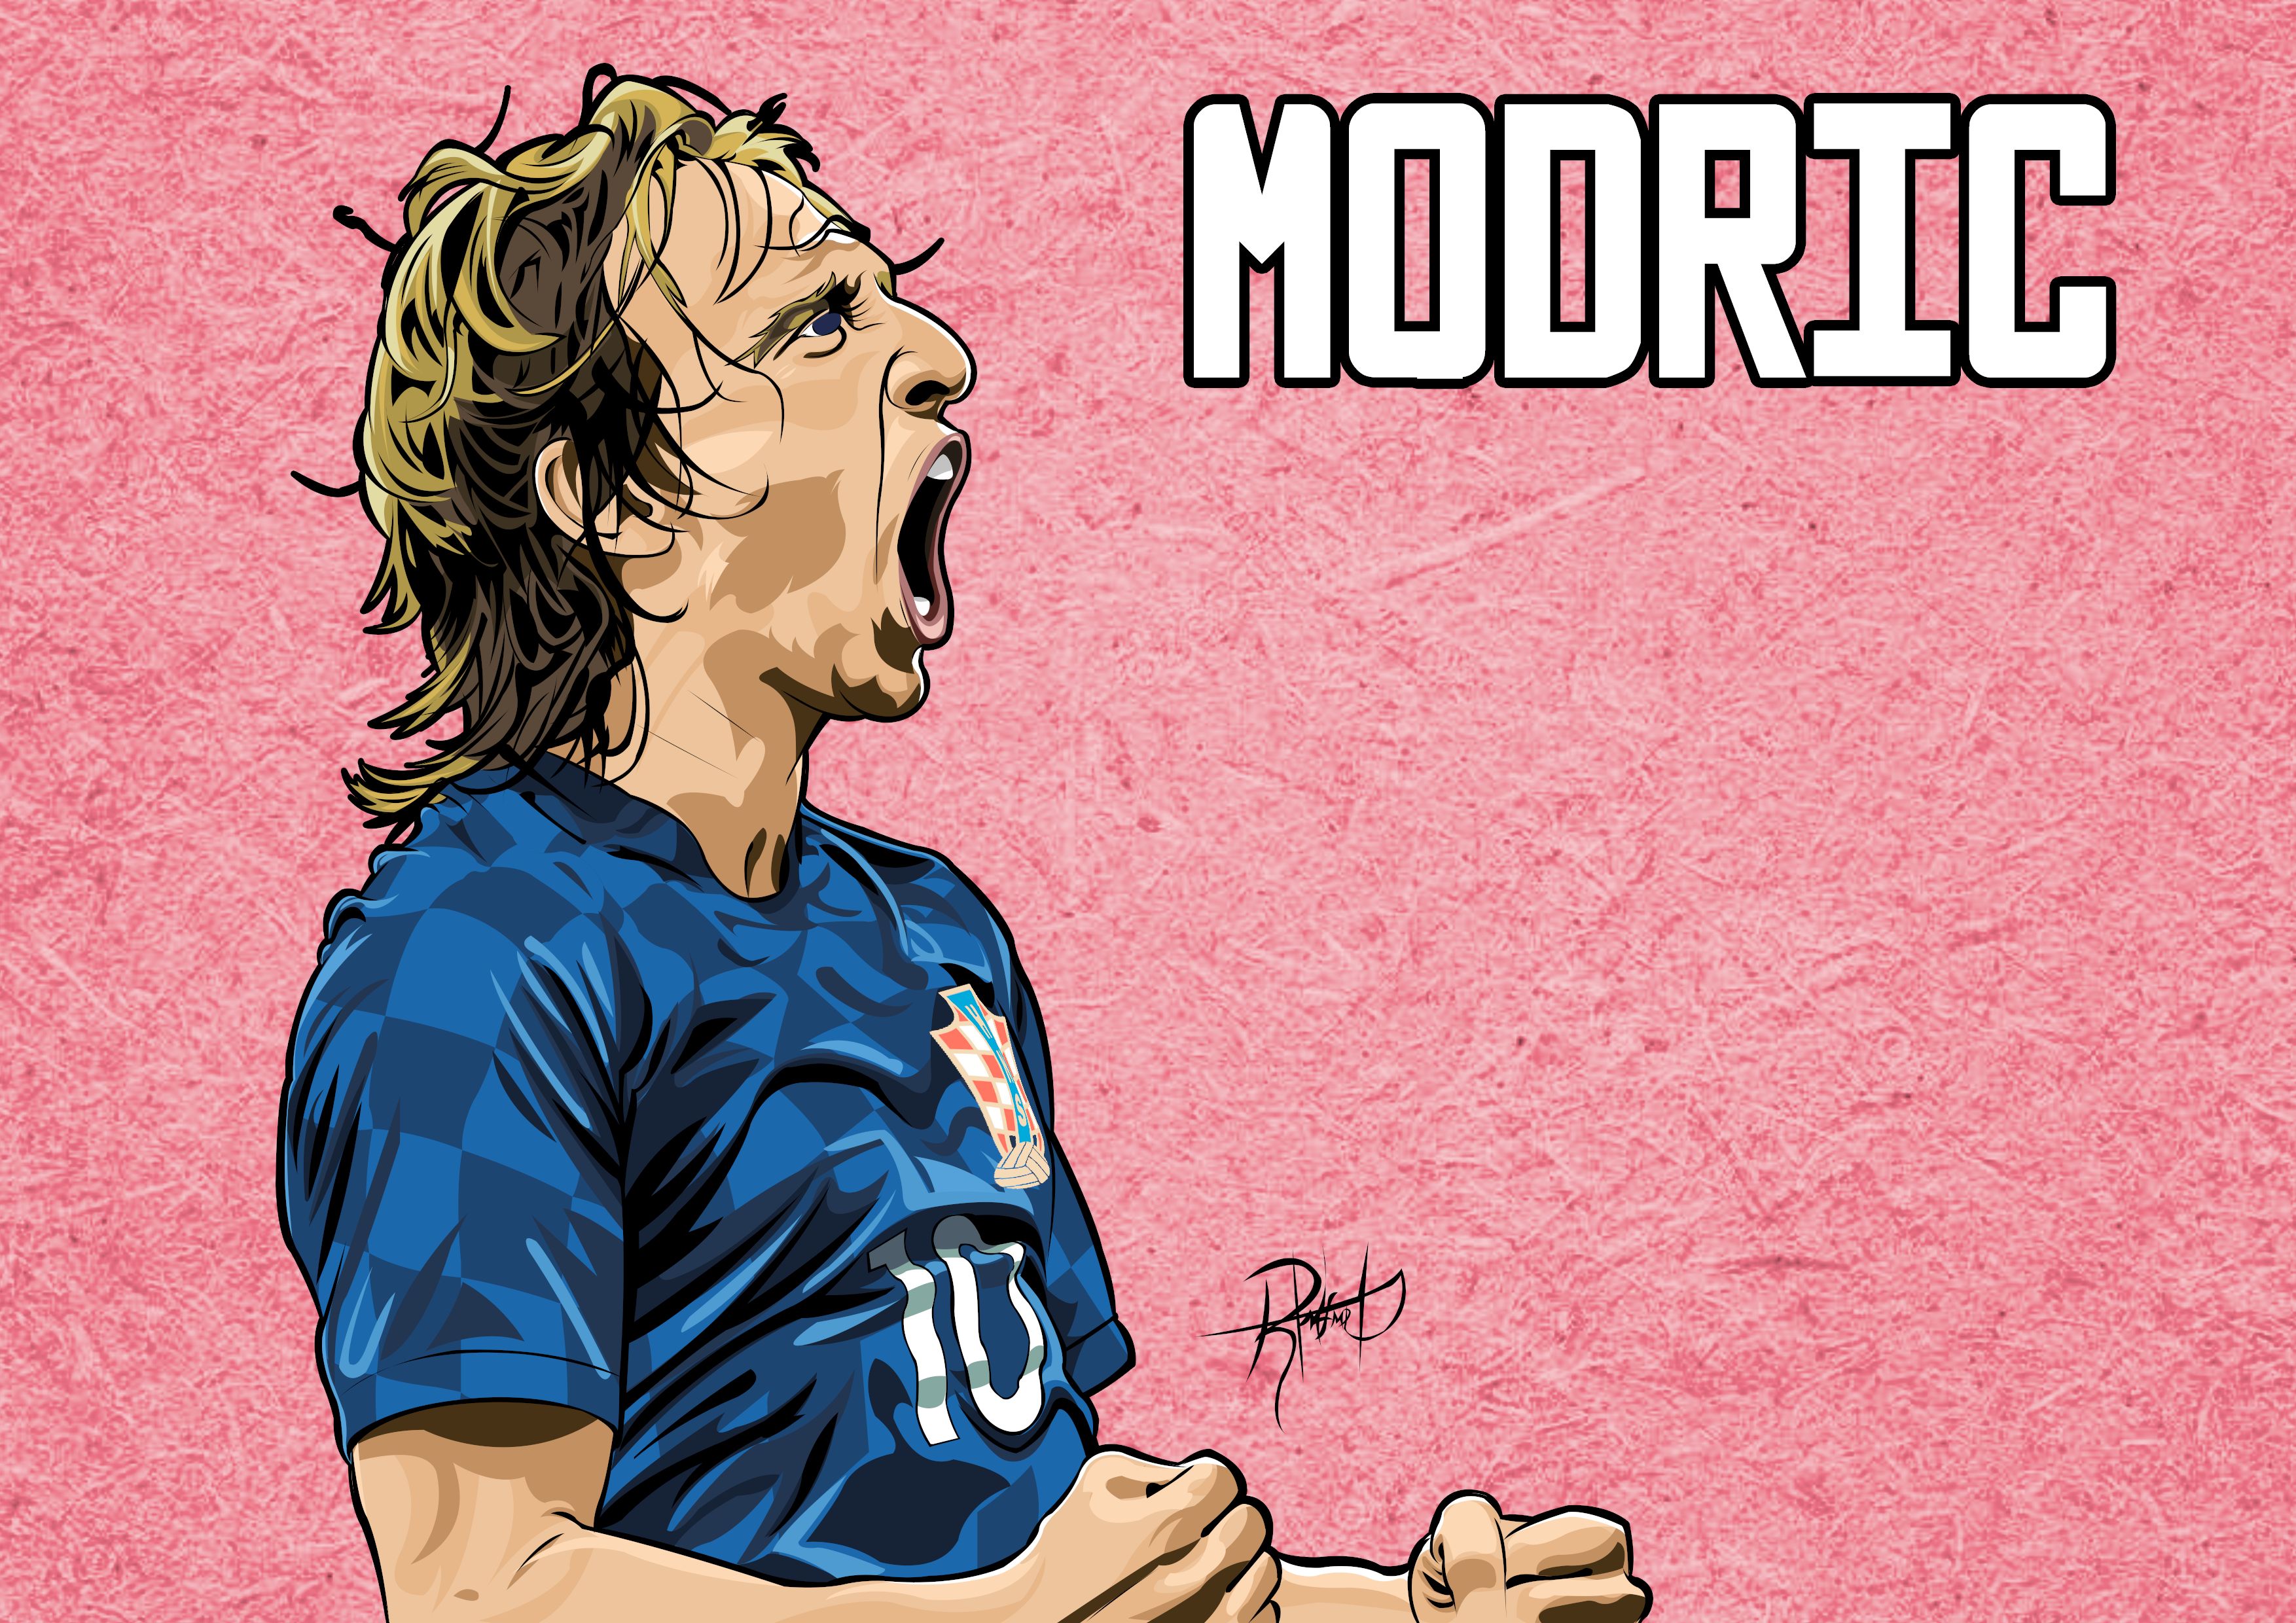 Baixar papel de parede para celular de Esportes, Futebol, Croata, Luka Modrić gratuito.